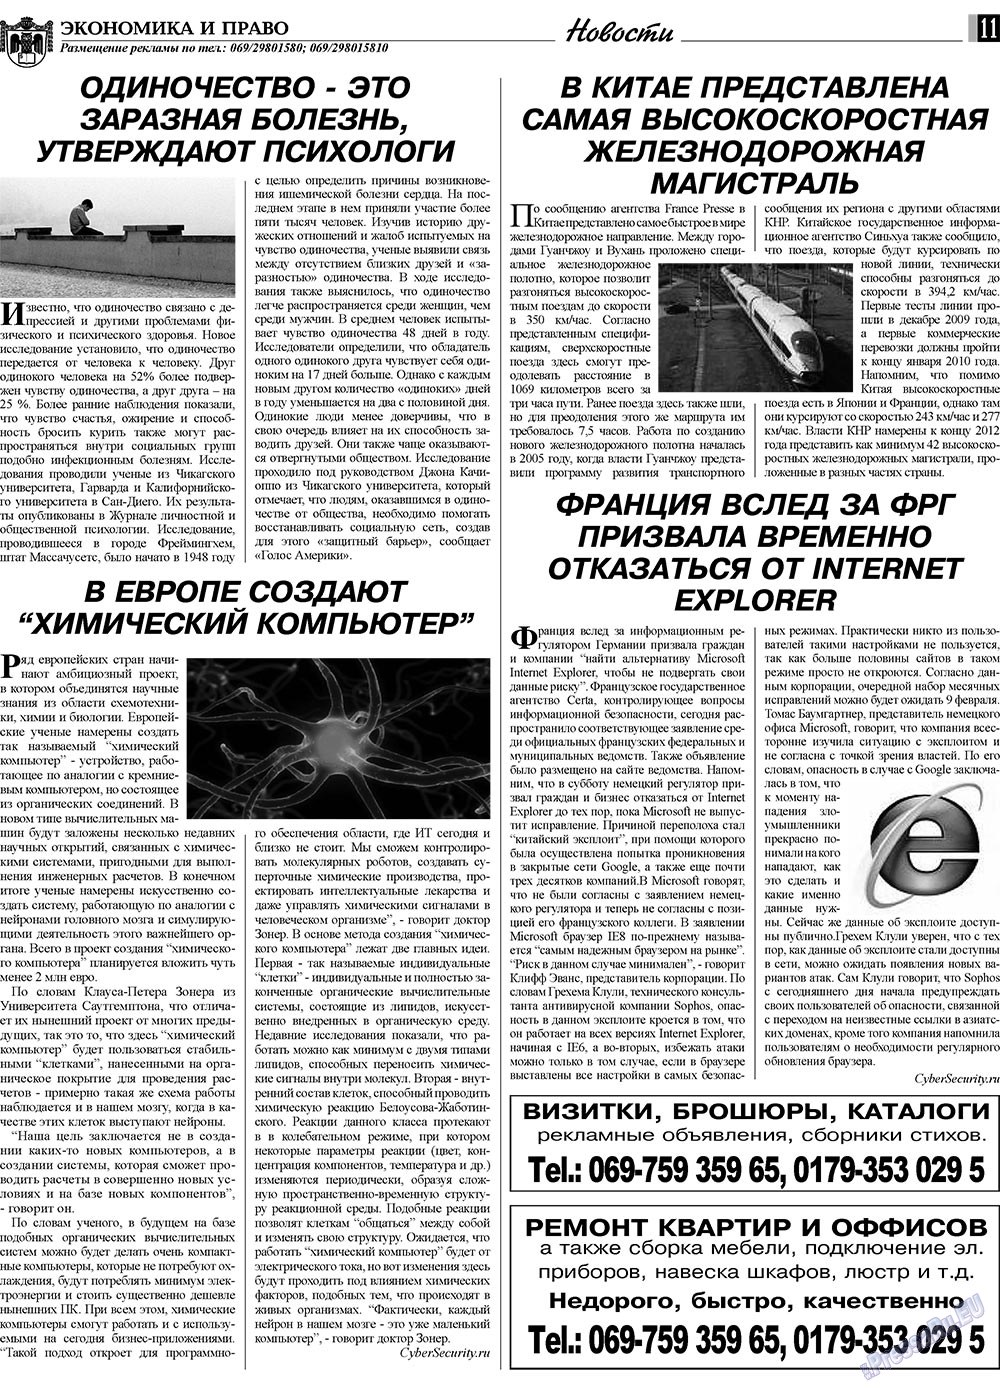 Экономика и право, газета. 2010 №2 стр.11